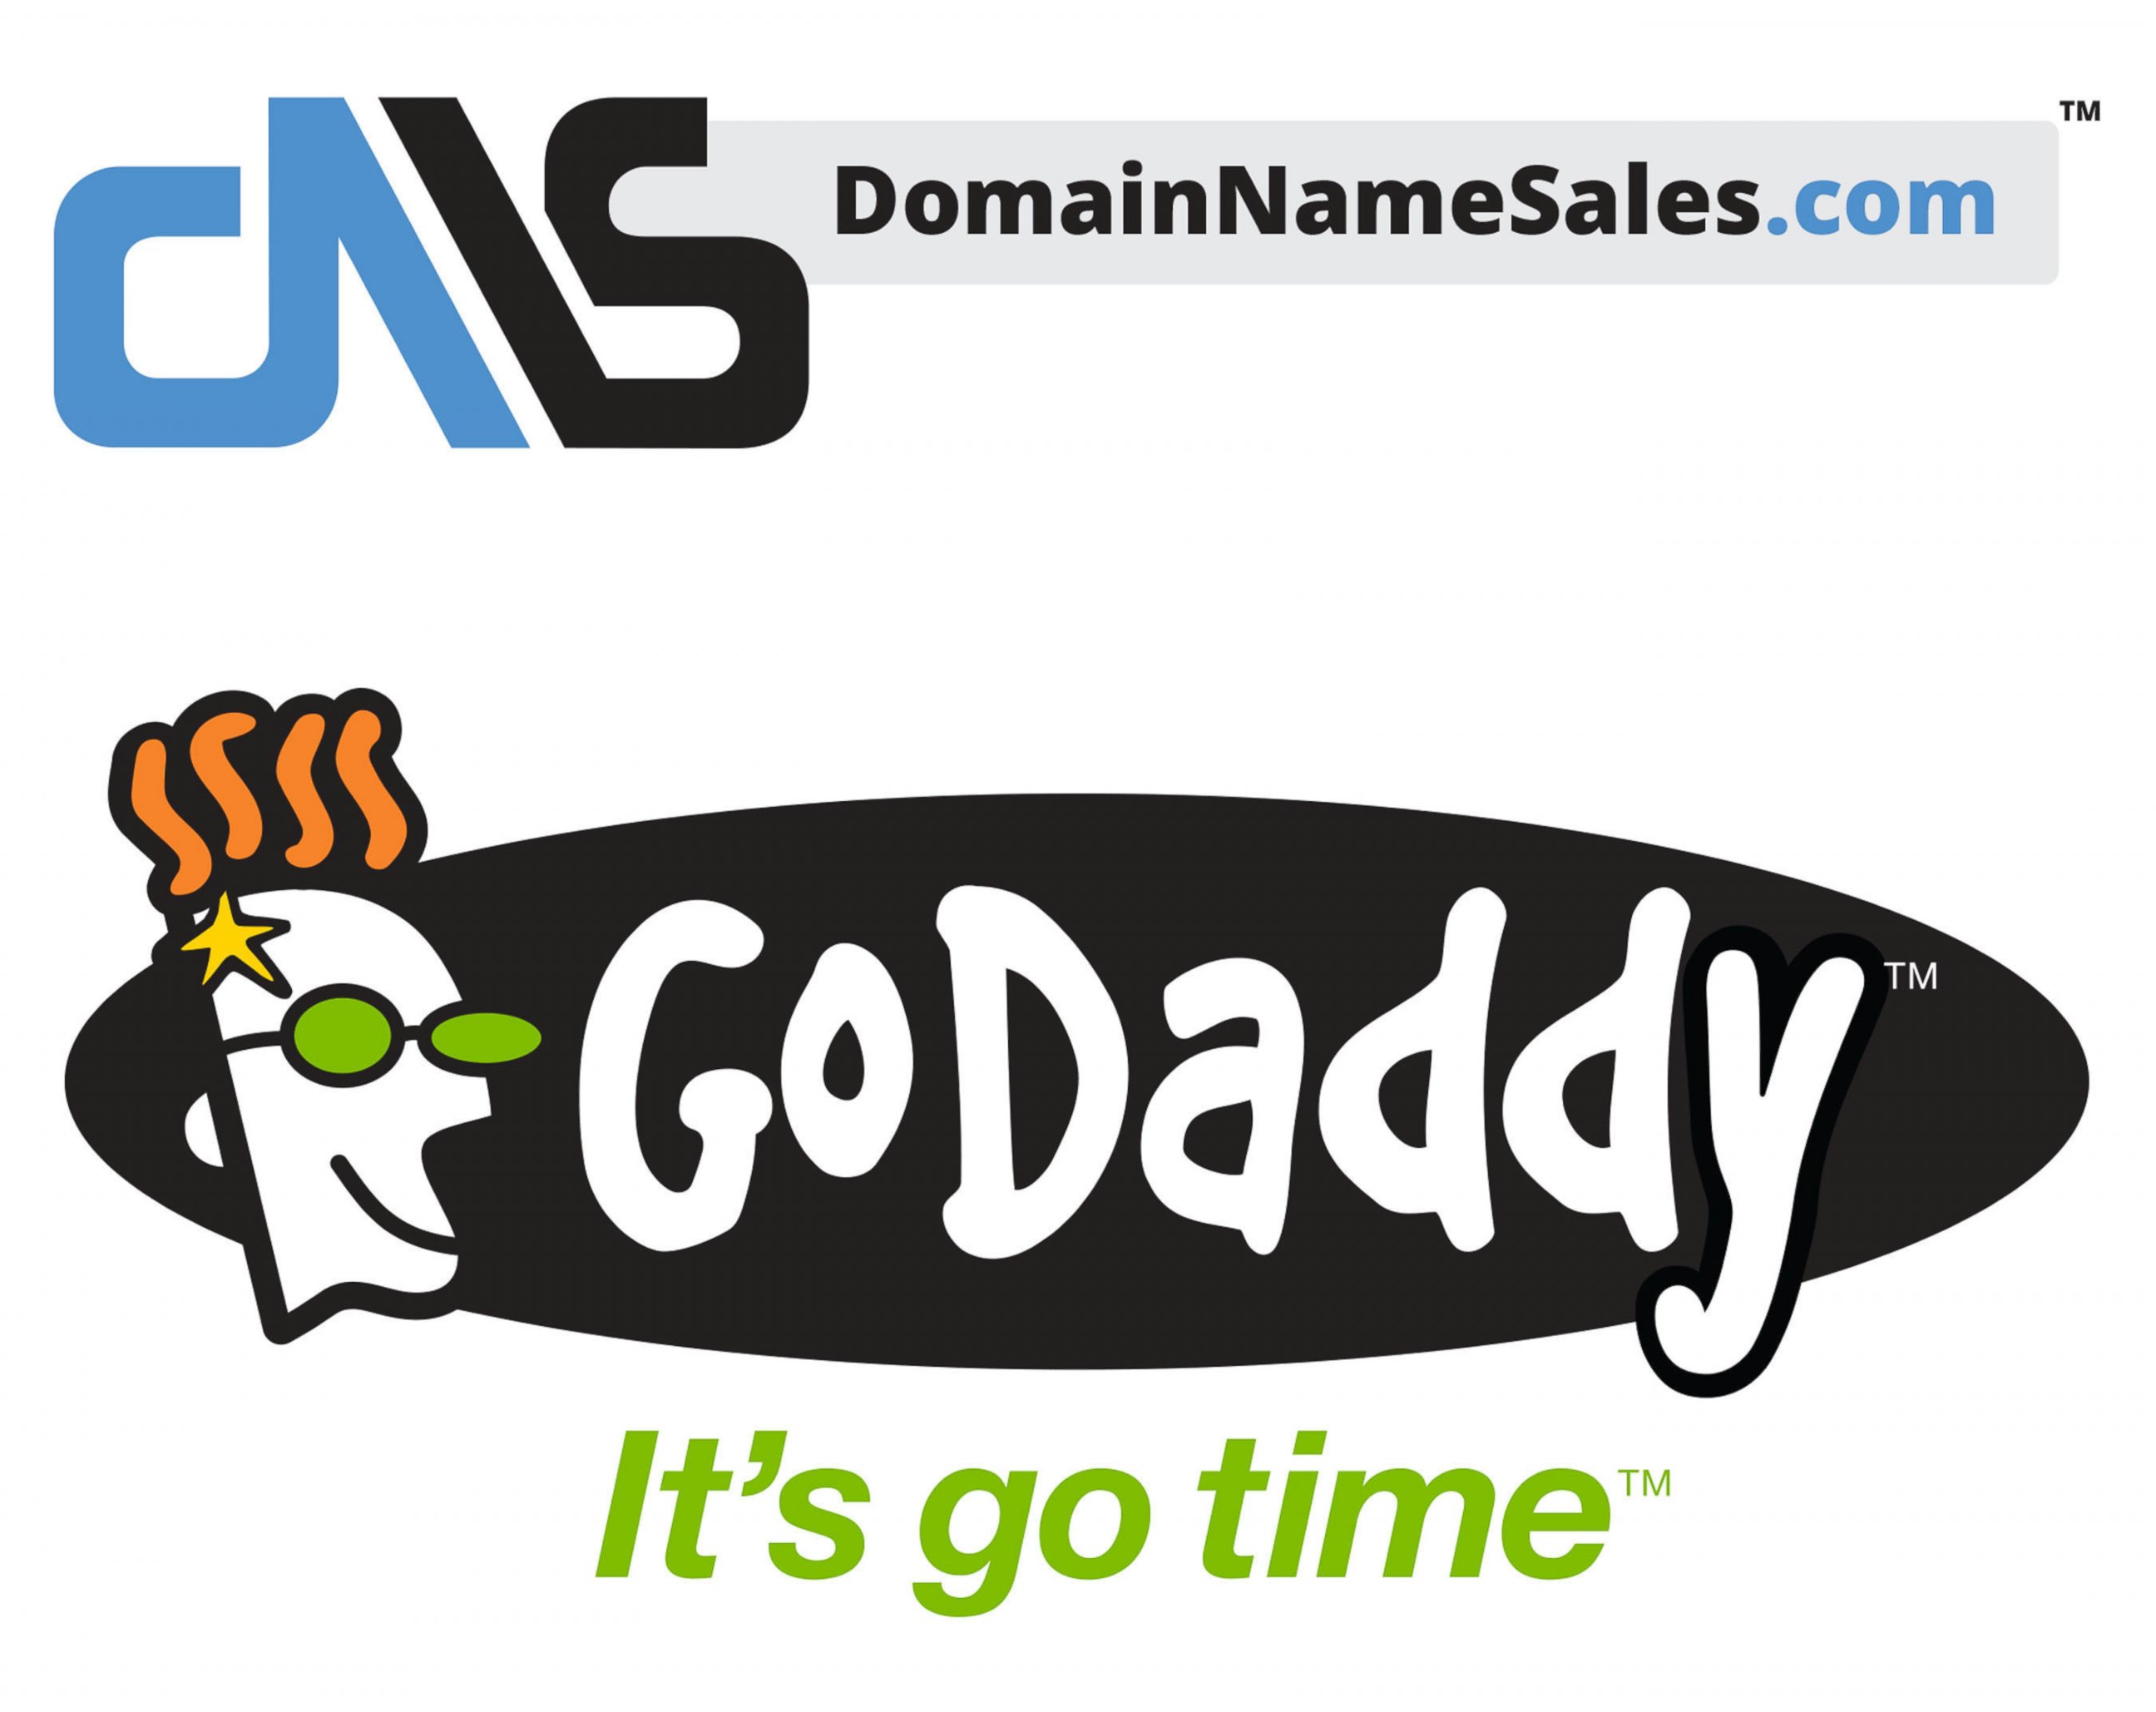 PHOTO: GoDaddy's logo.